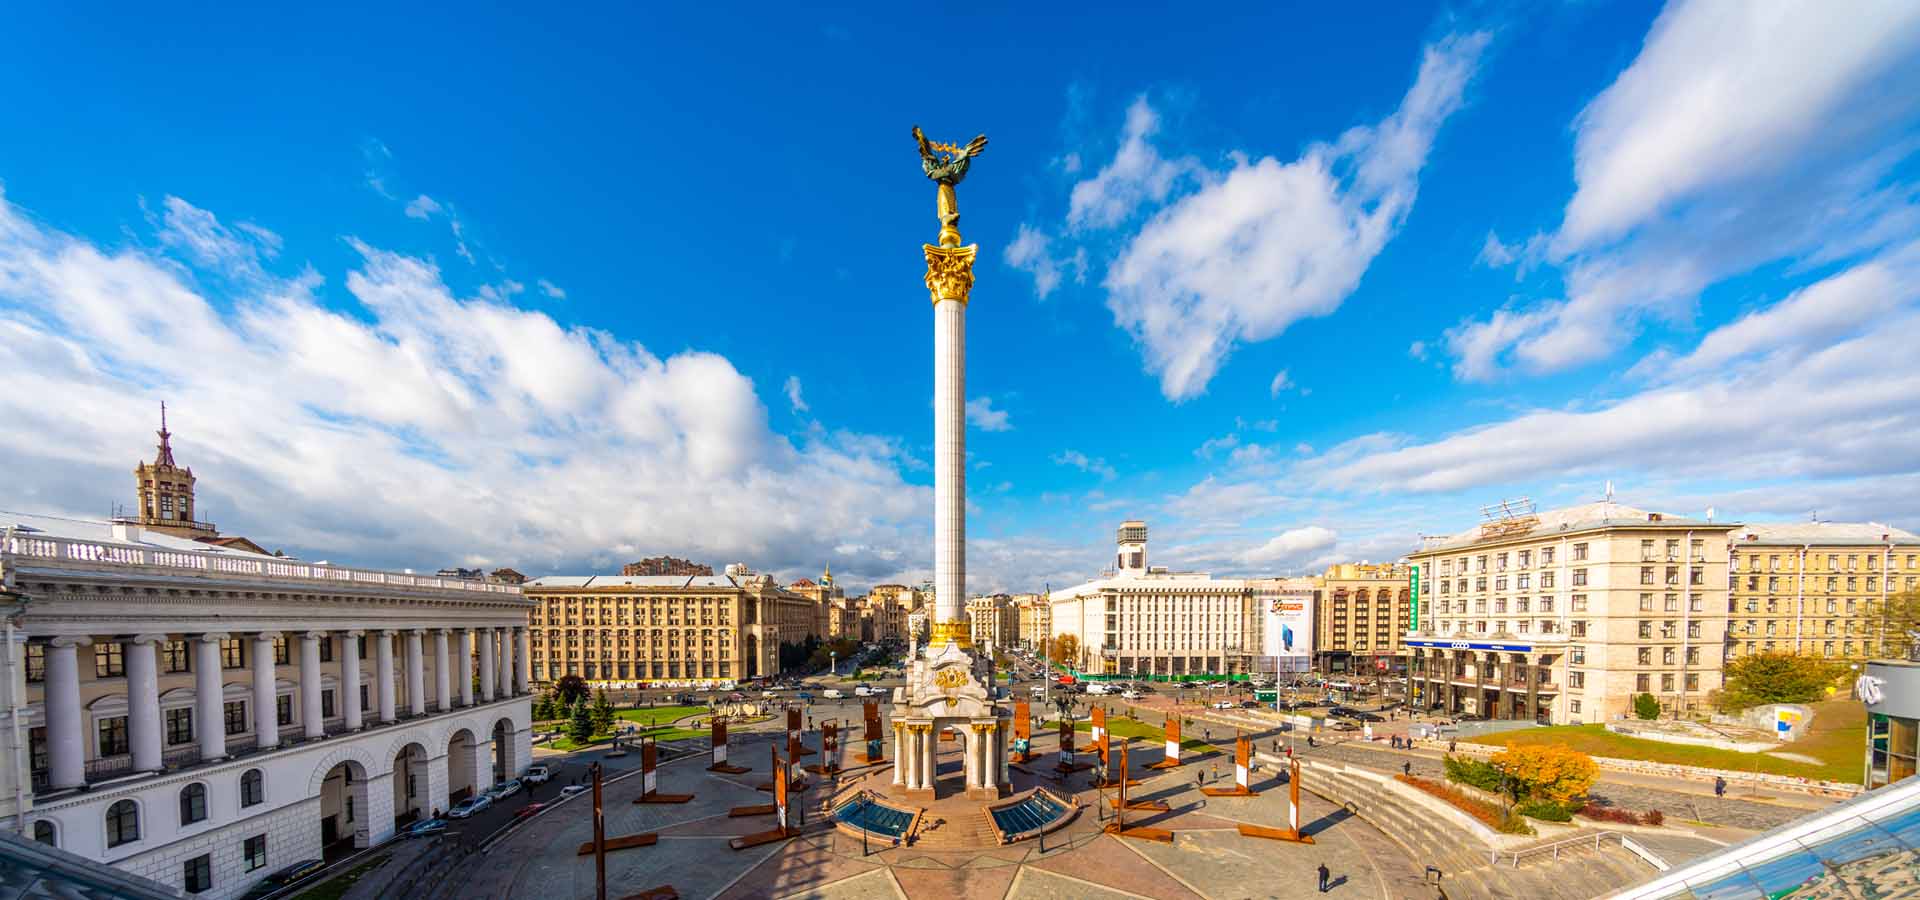 Vista de la Plaza de la Independencia y monumento a los fundadores en Kyiv, Ucrania, rodeada de edificios, torres, árboles y calles con coches y autobuses con gente al fondo